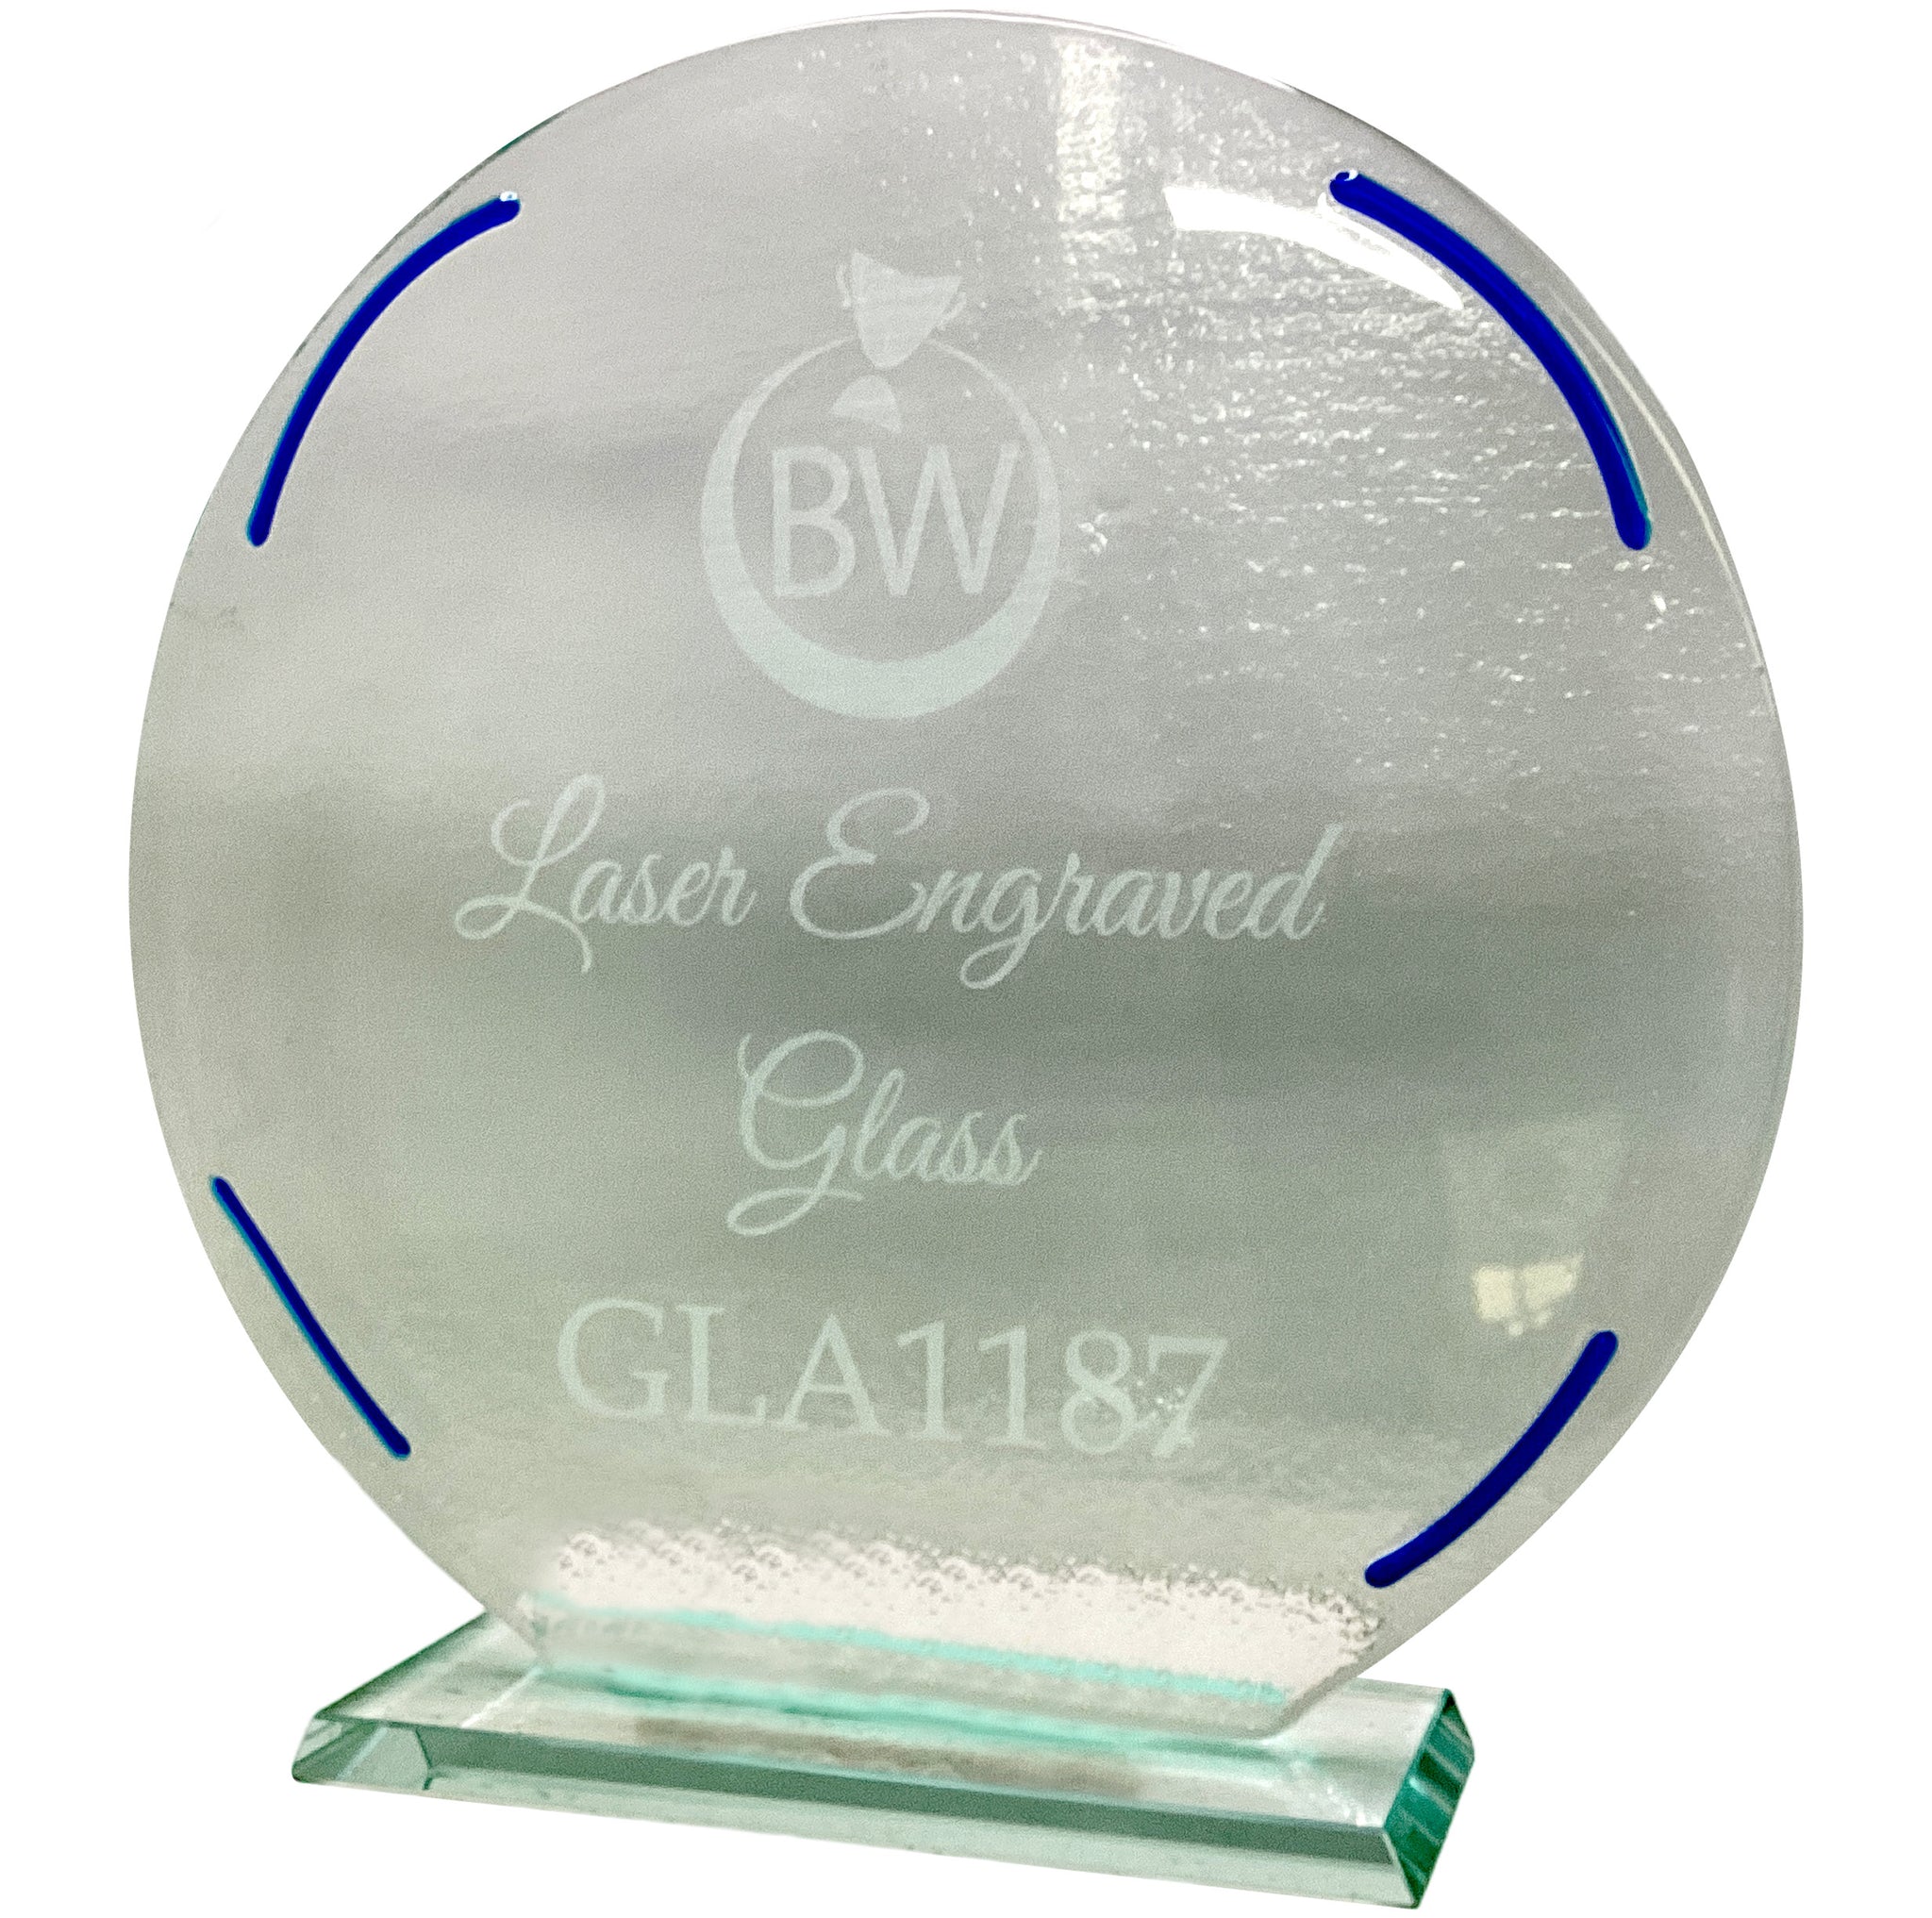 Large Circular Laser Engraved Jade Glass (GLA1187)